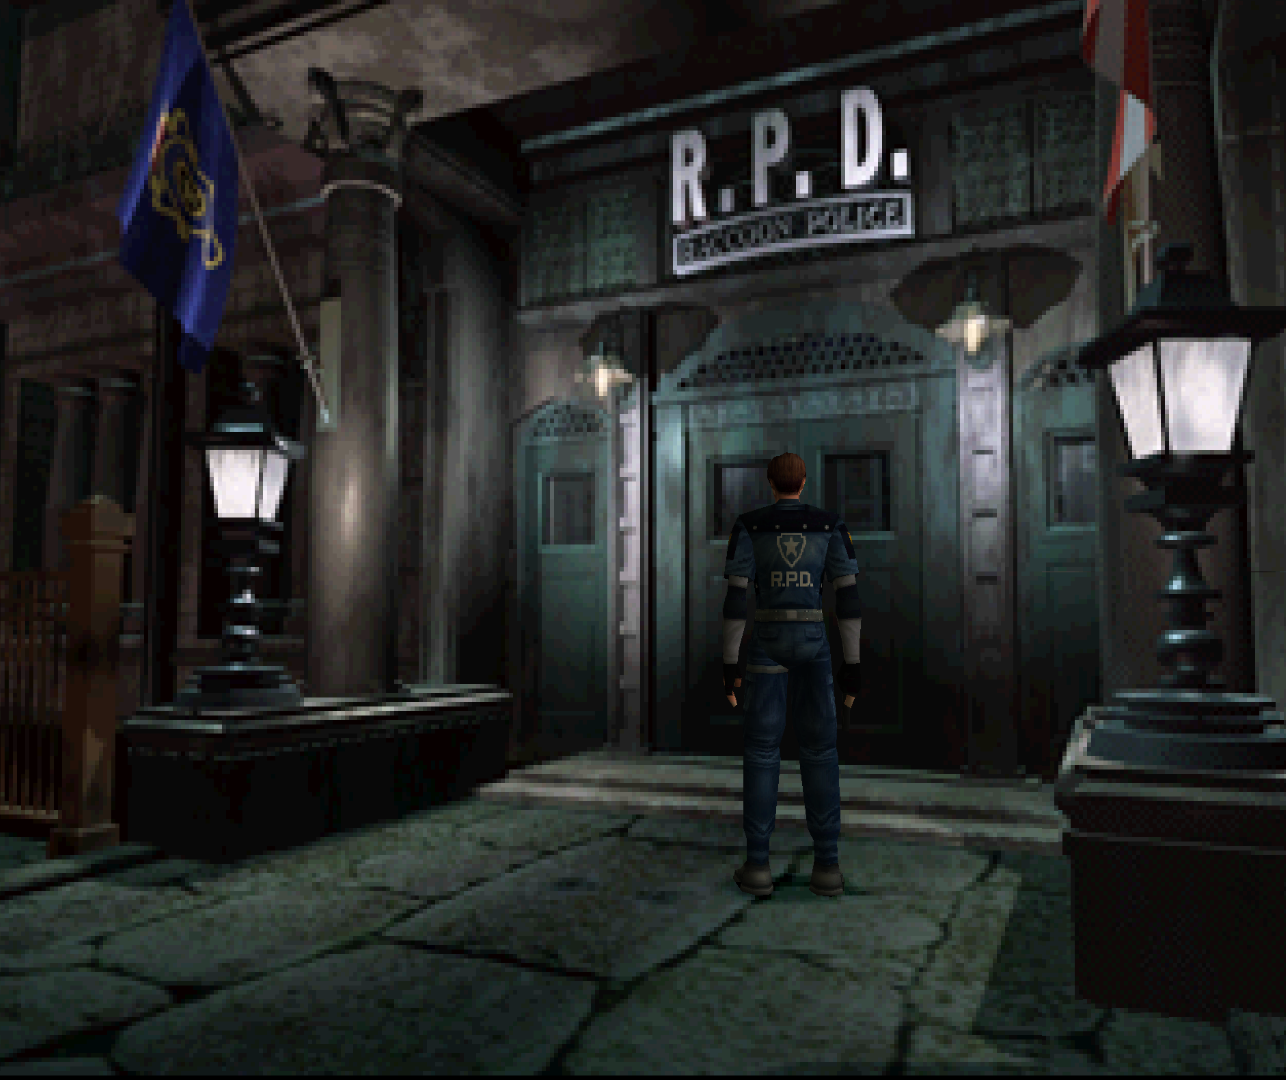 Resident Evil 2 N64